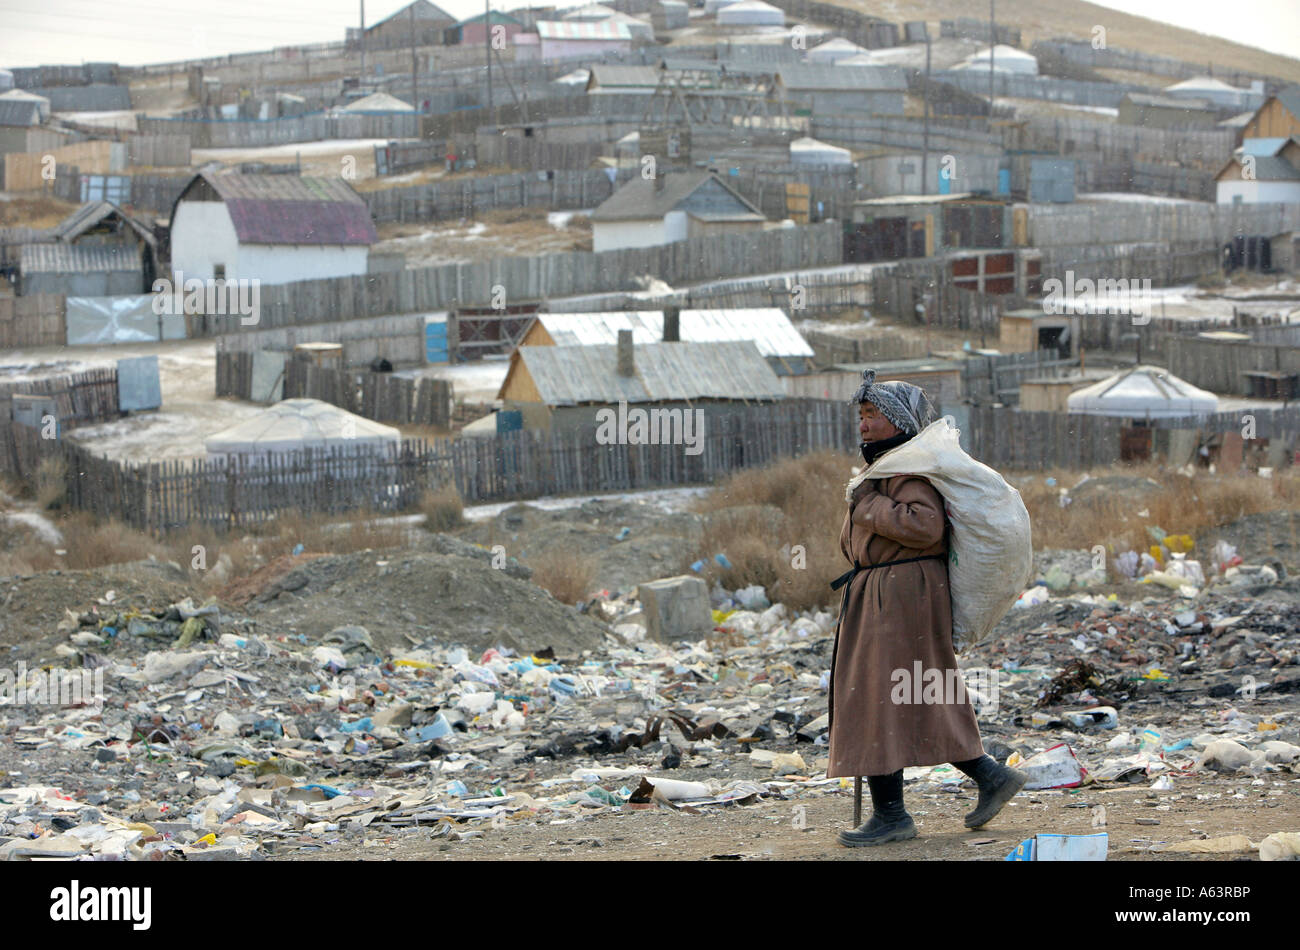 Mongolia, Ulan Bator - Mendigo recoge botellas de plástico en un vertedero de basura Foto de stock